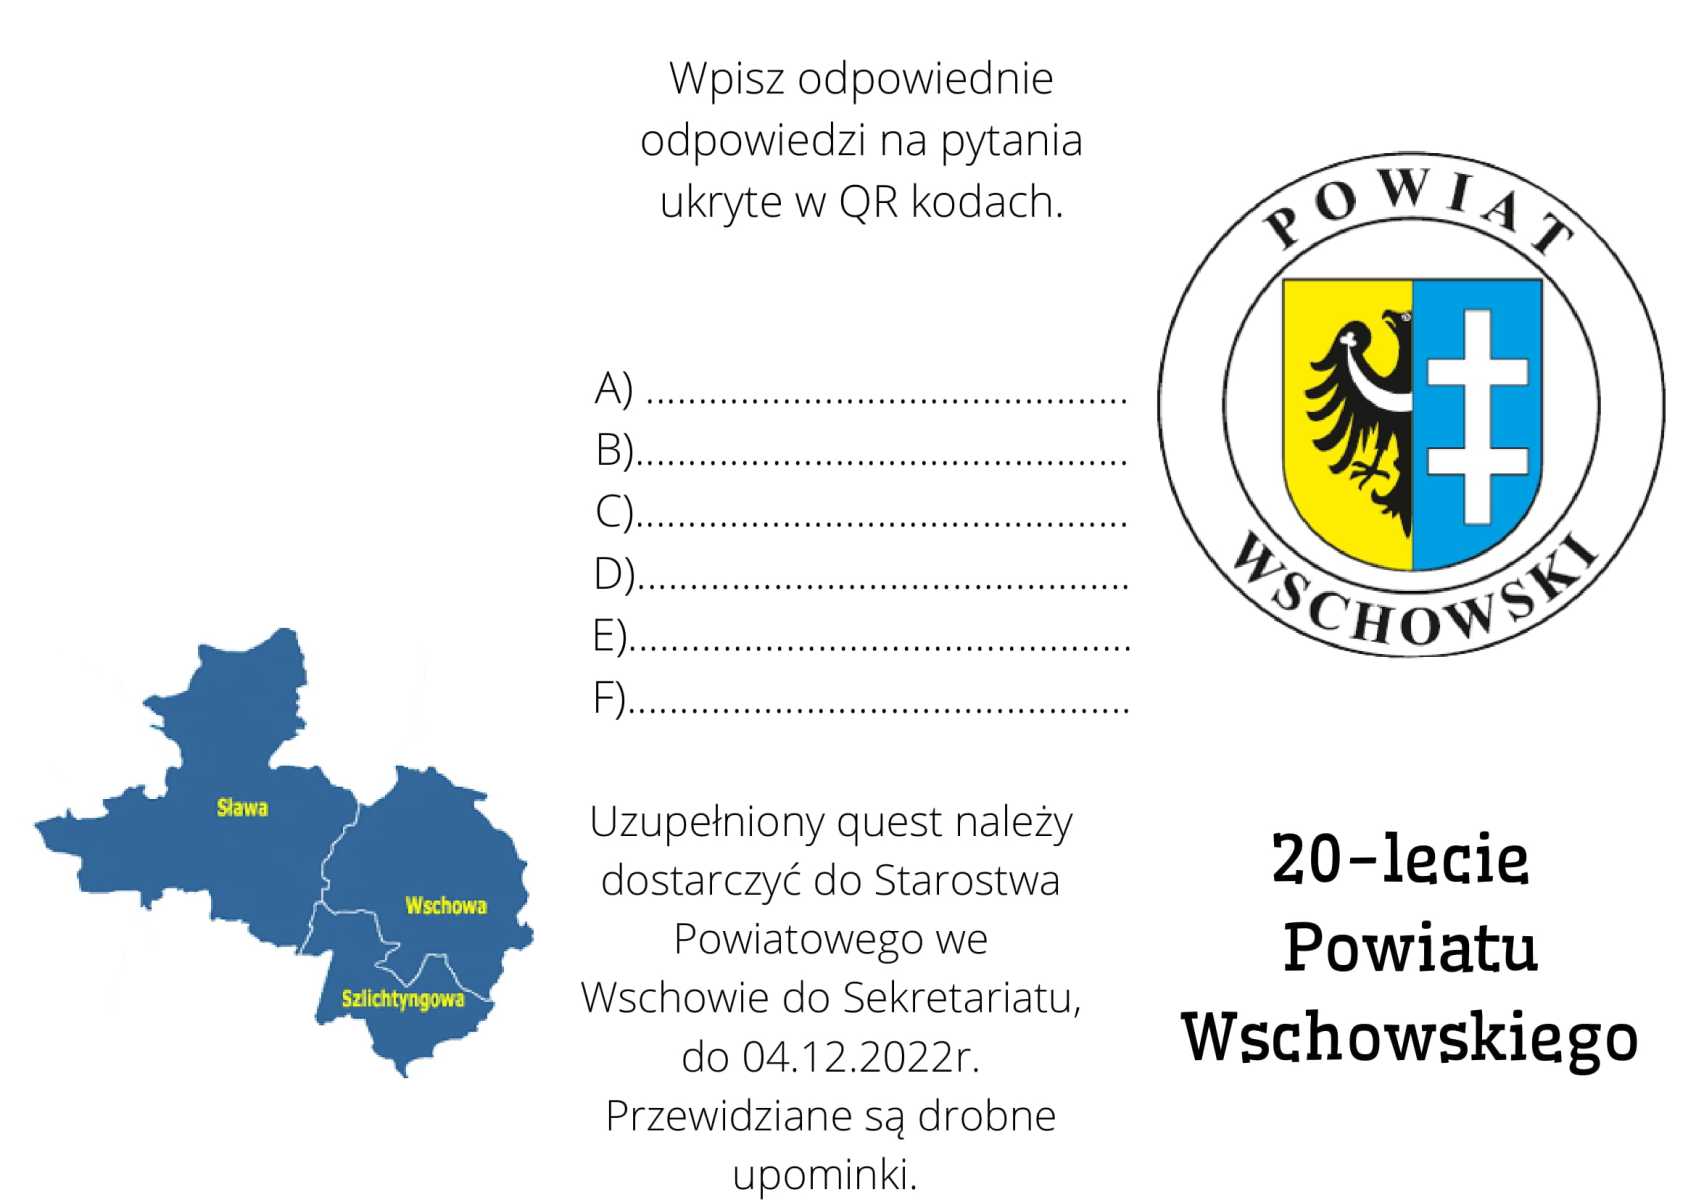 Quest na 20-lecie Powiatu Wschowskiego